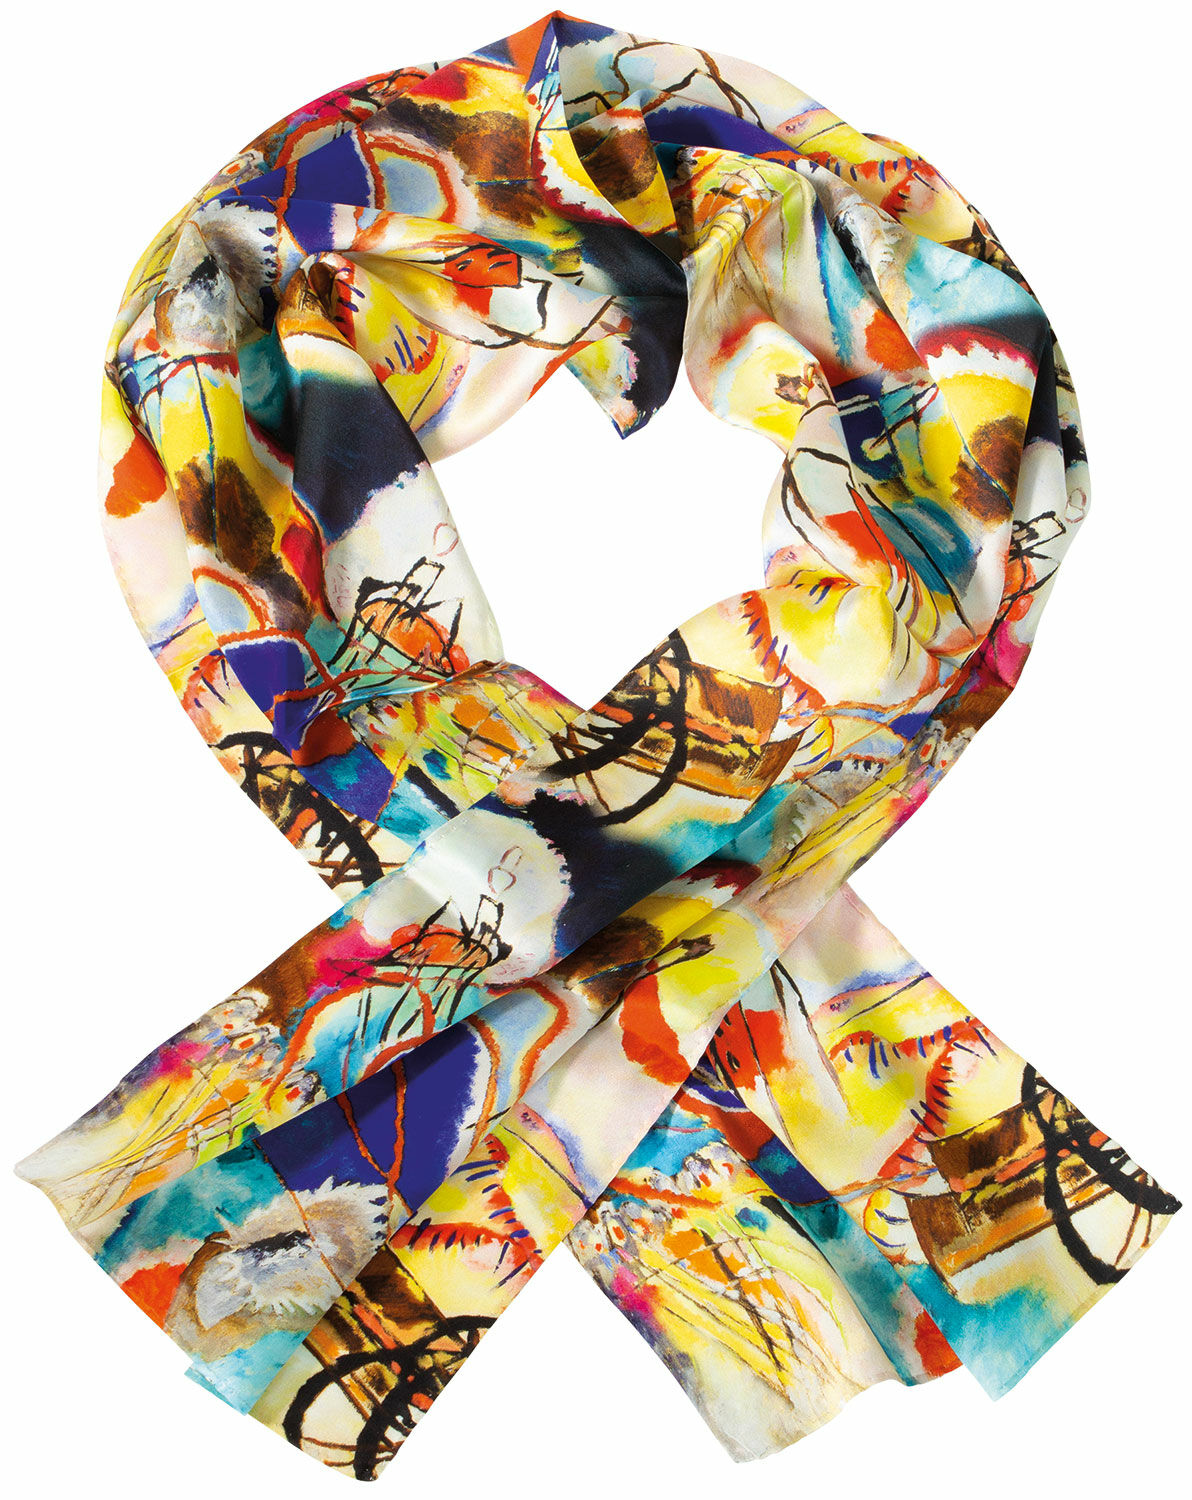 Silk scarf "Improvisation No. 30" by Wassily Kandinsky